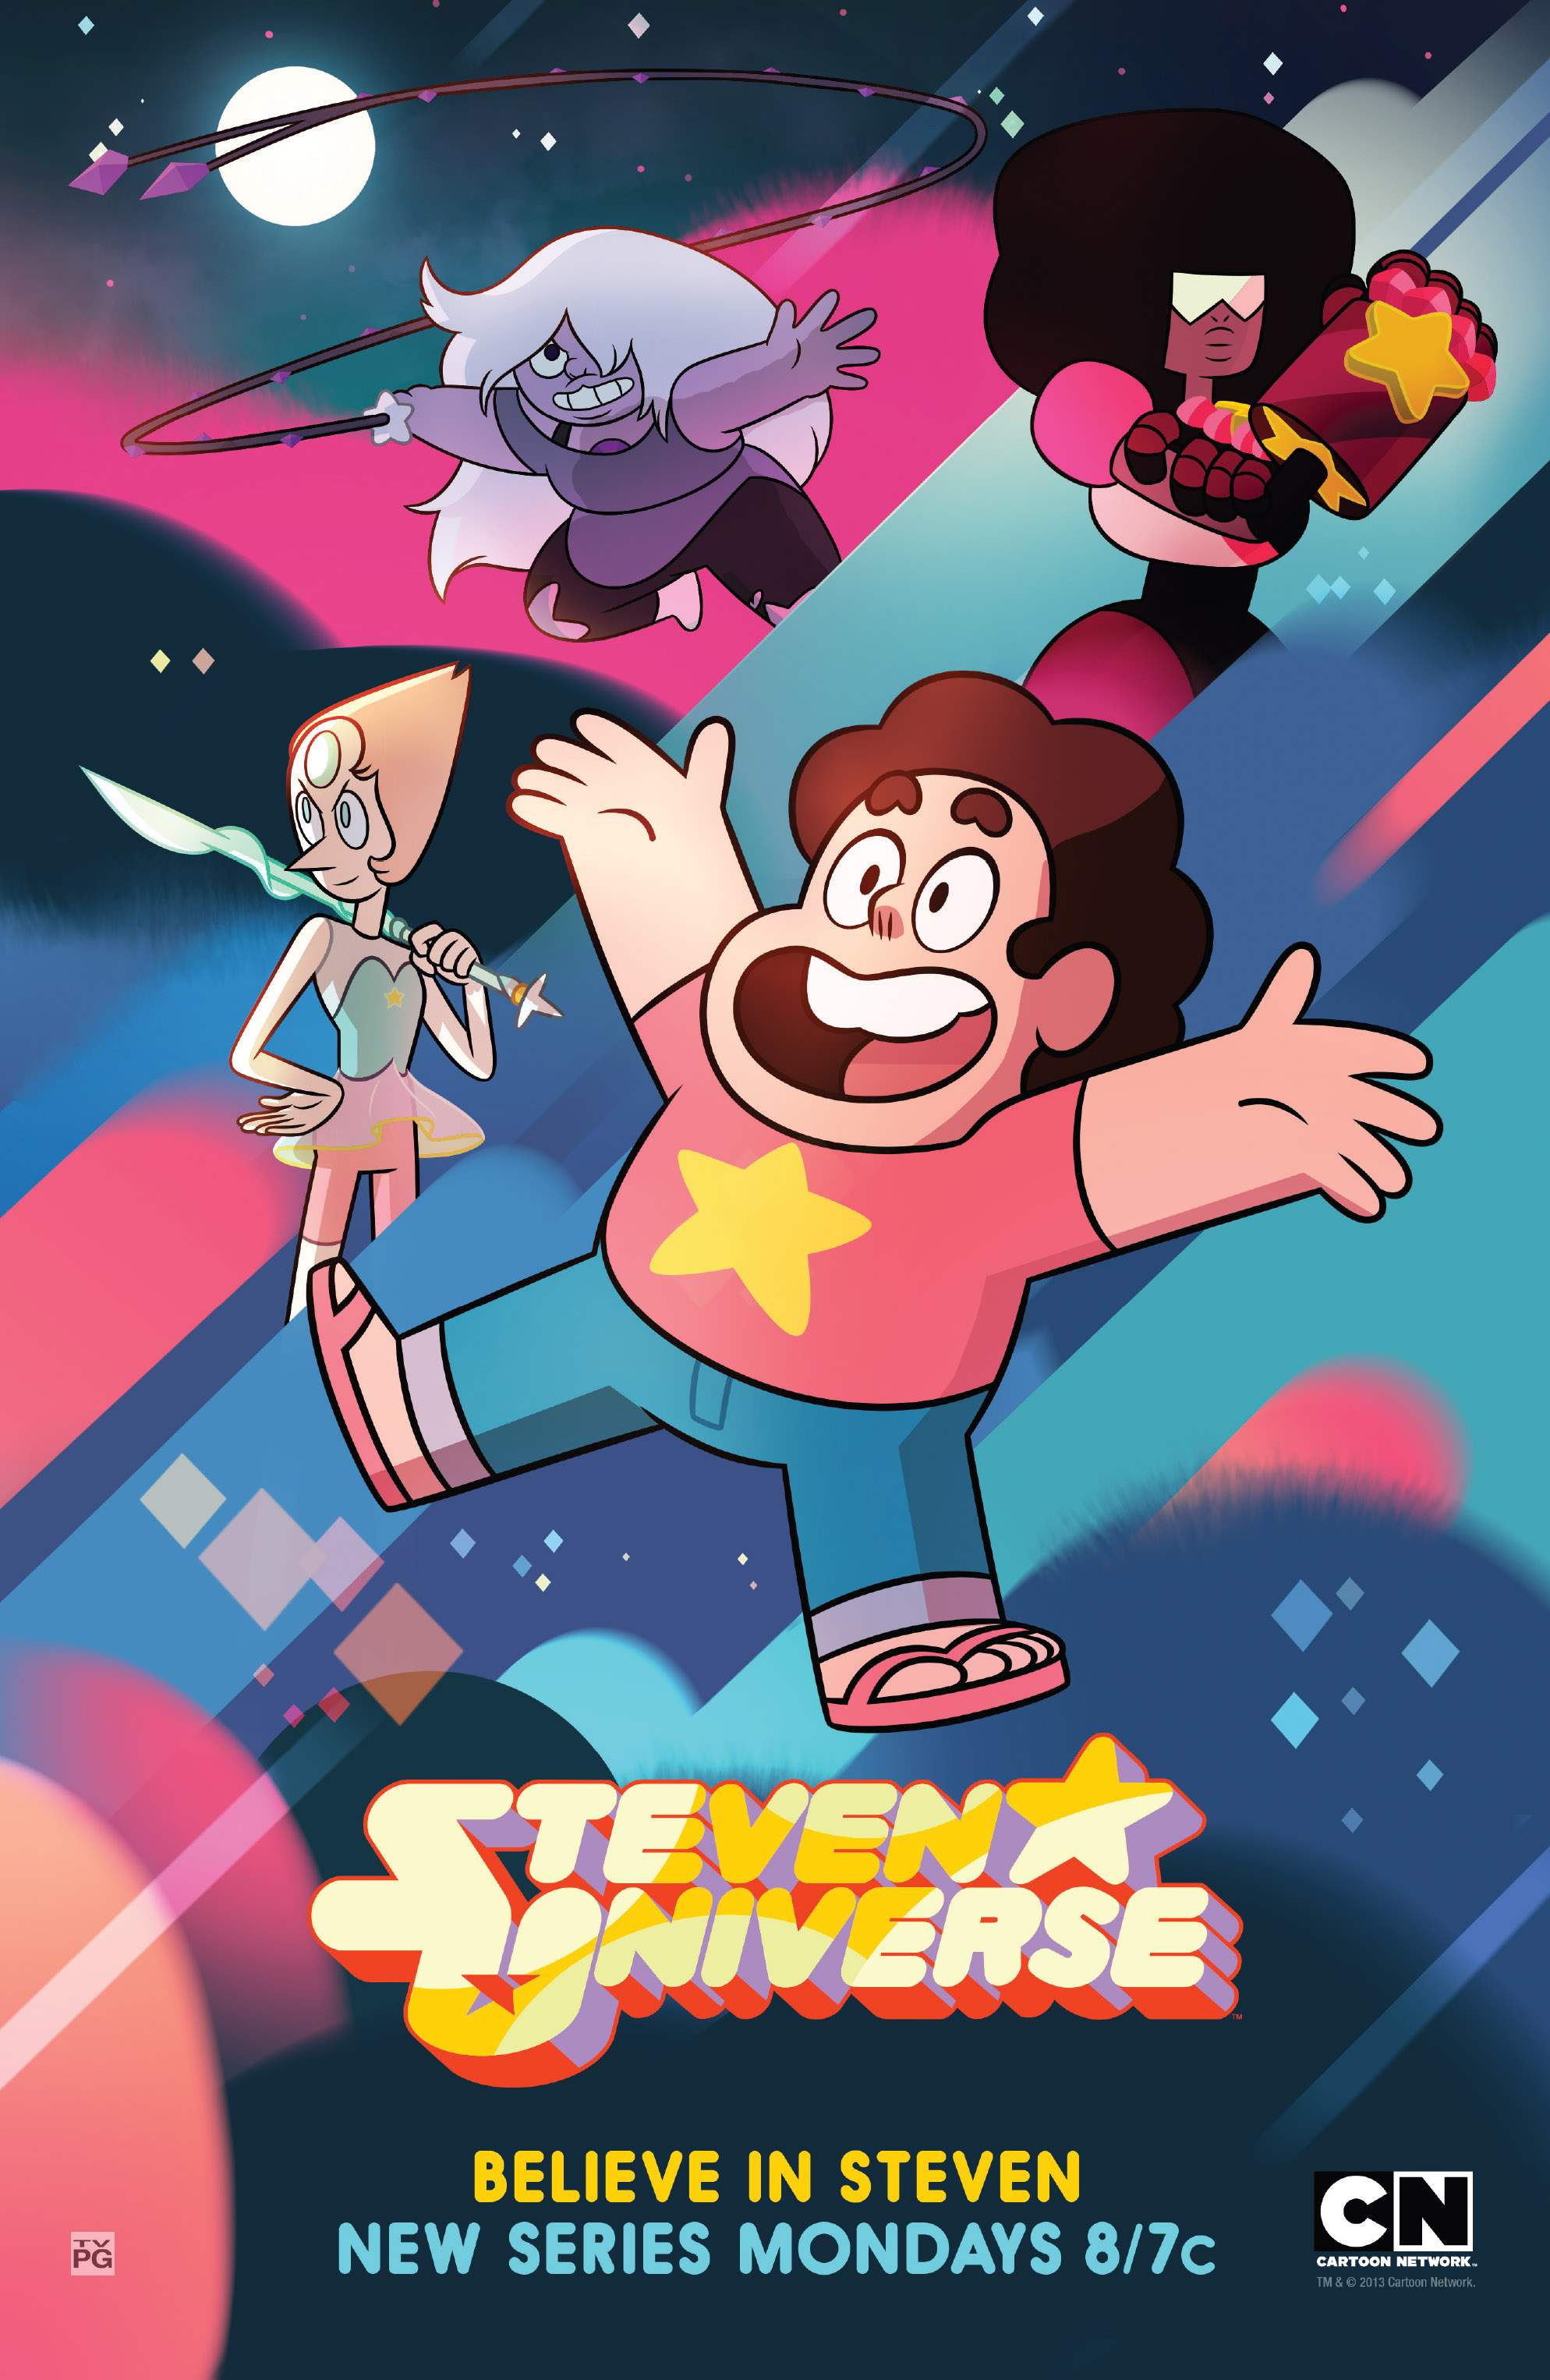 Você realmente conhece Steven universo?